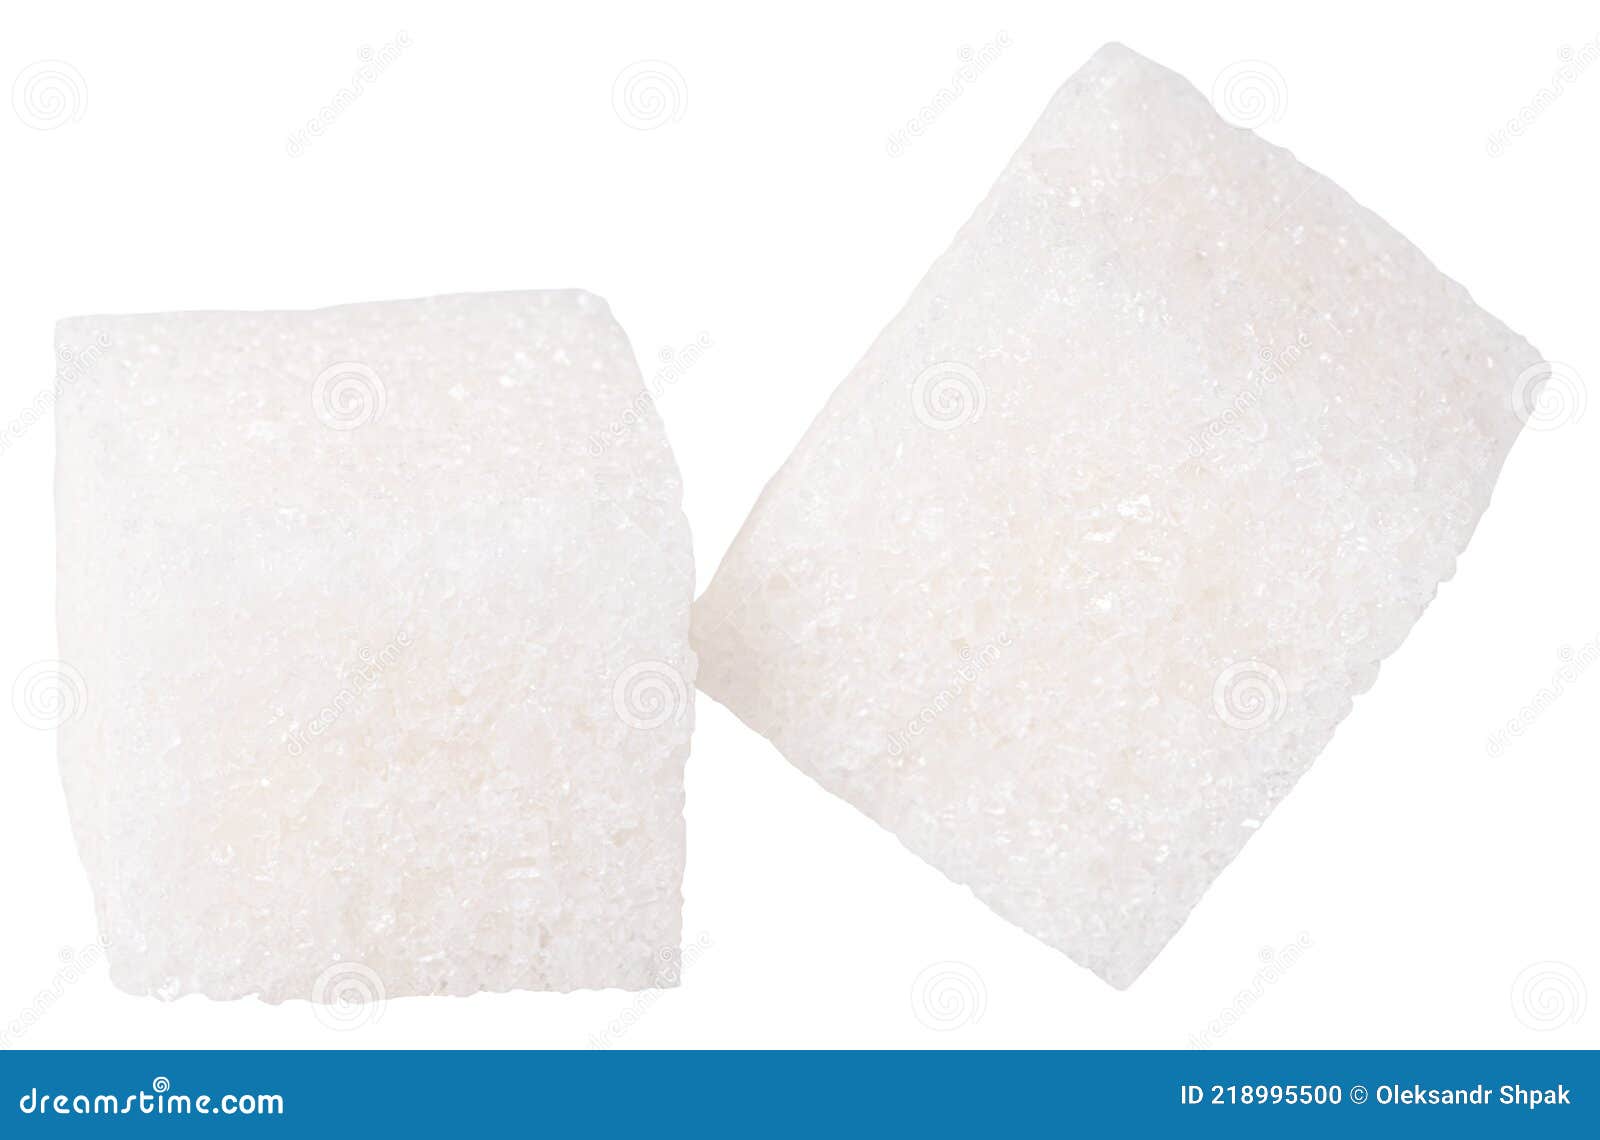 Sugars Cubes Isolated on White Background. White Sugar Stock Photo ...